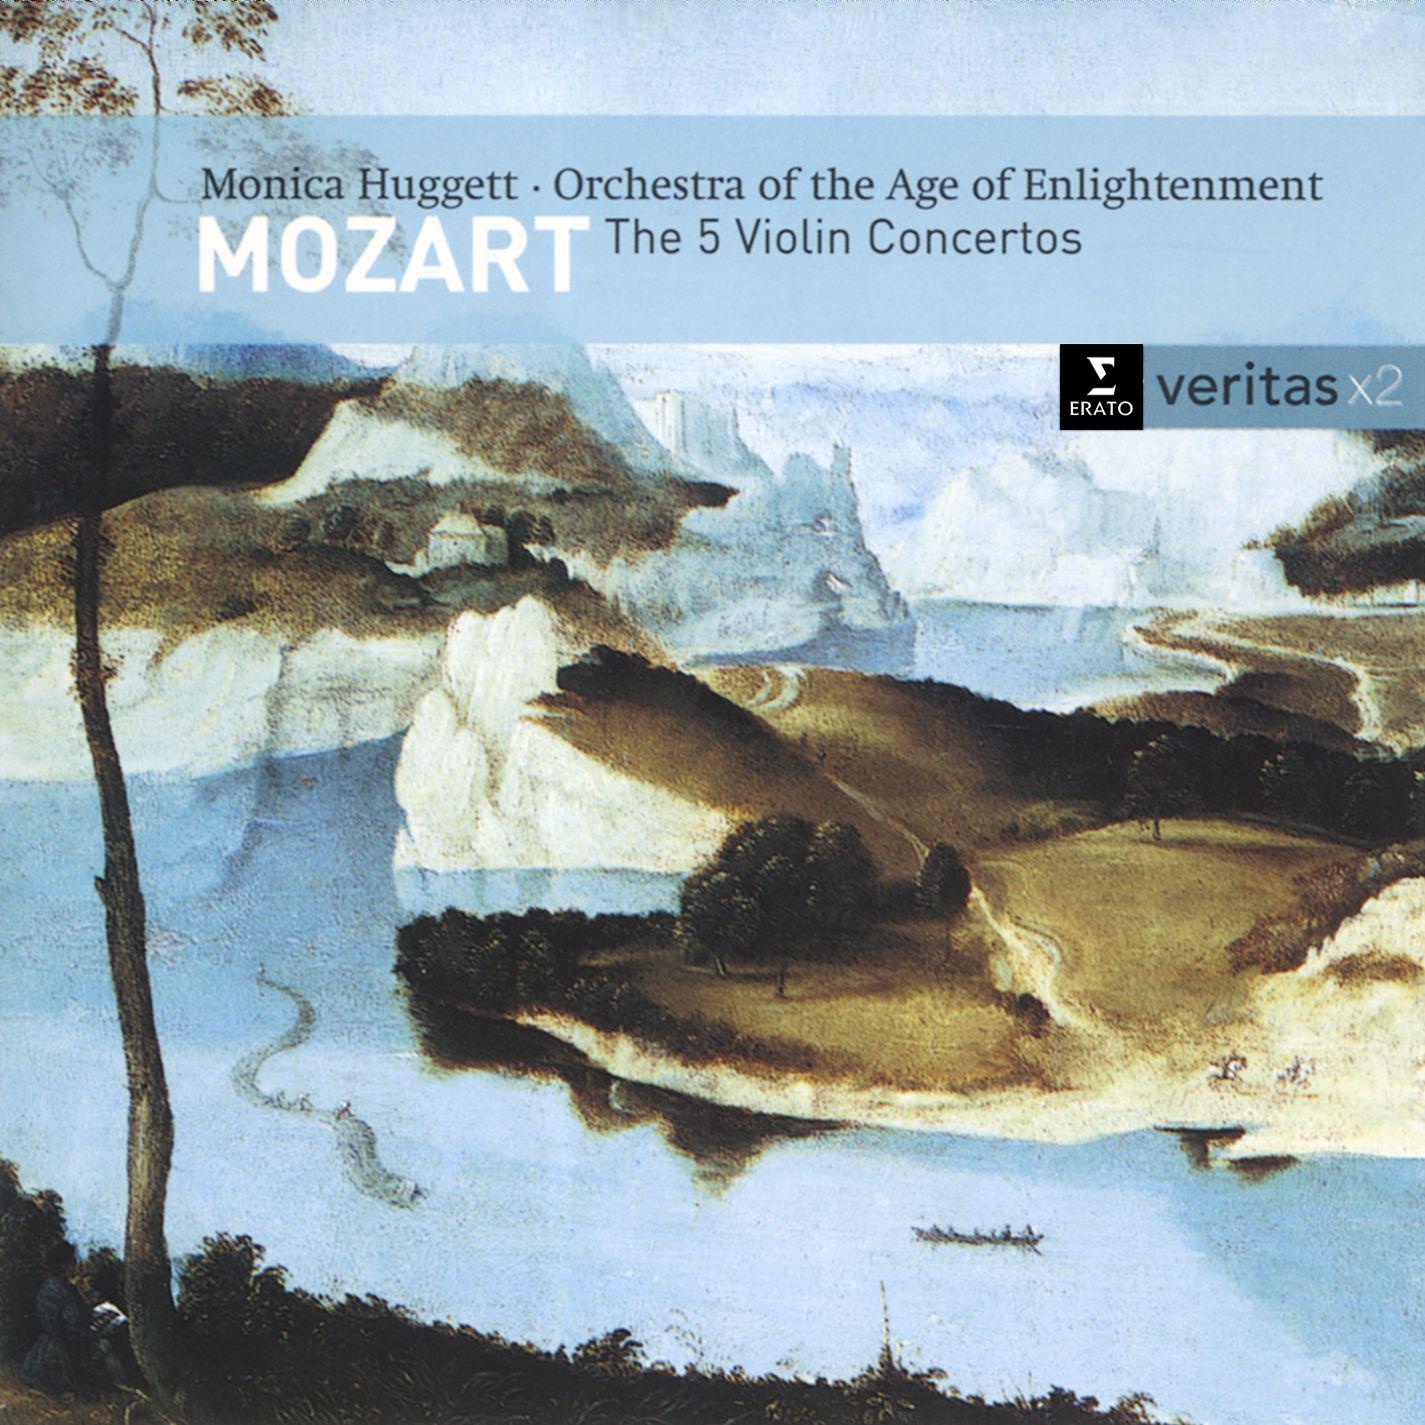 Violin Concerto No. 1 in B flat major K207: II. Adagio